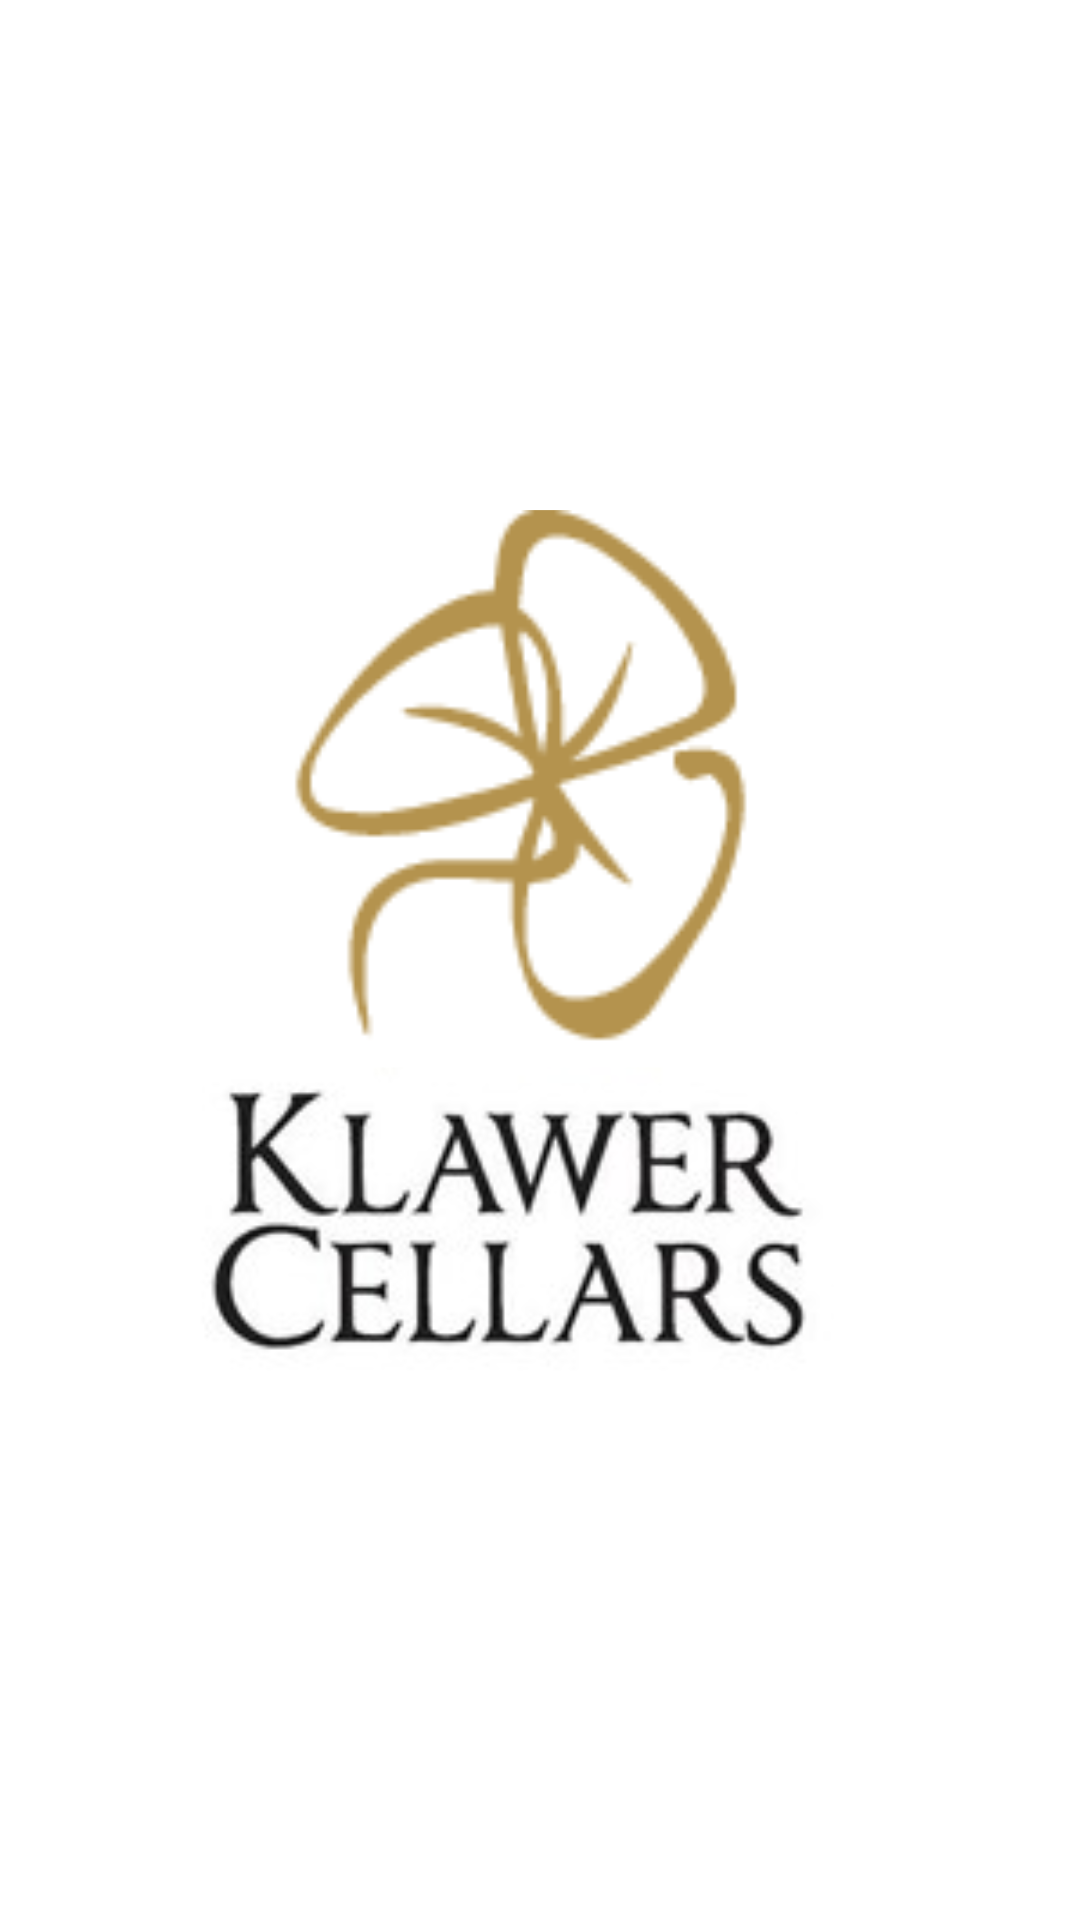 Klawer Cellars